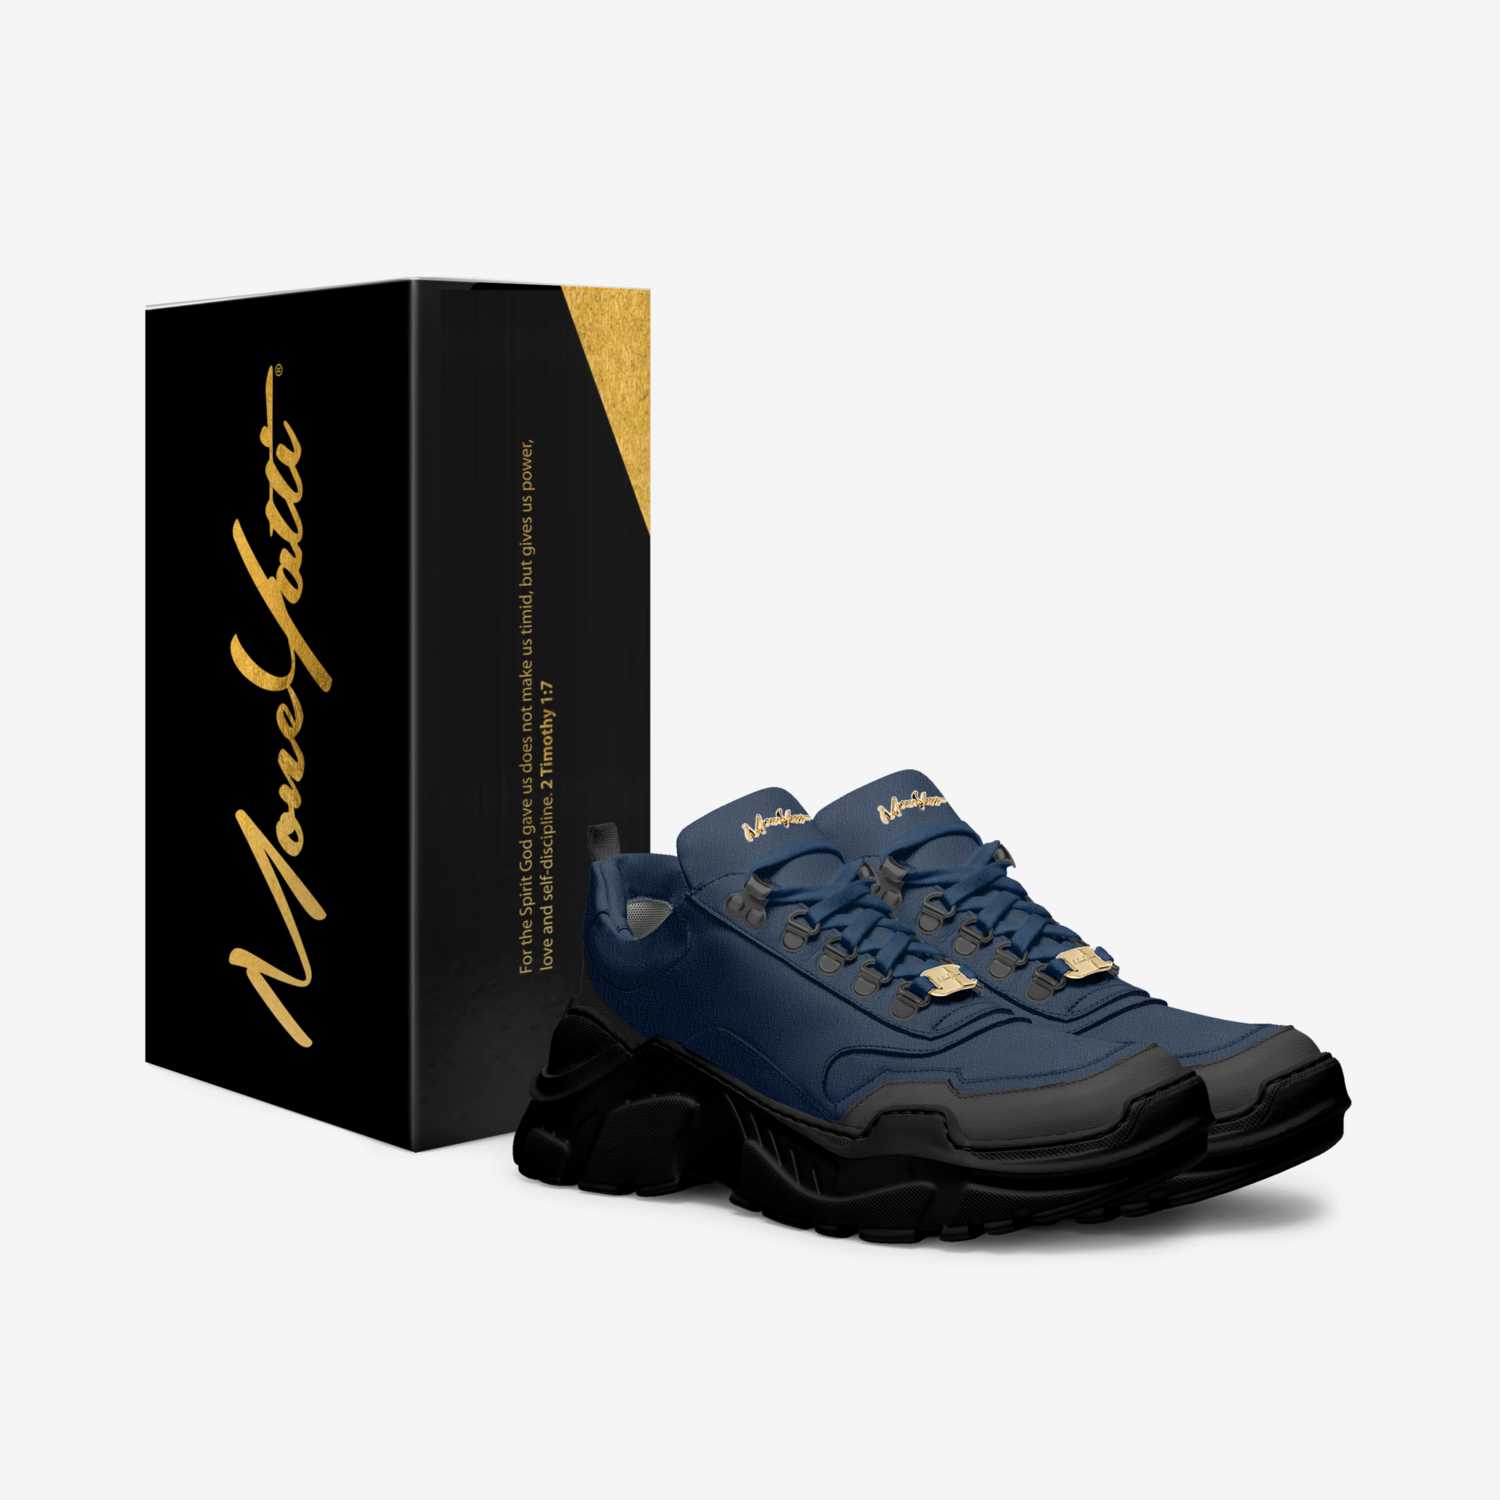 Moneyatti Murks27 custom made in Italy shoes by Moneyatti Brand | Box view